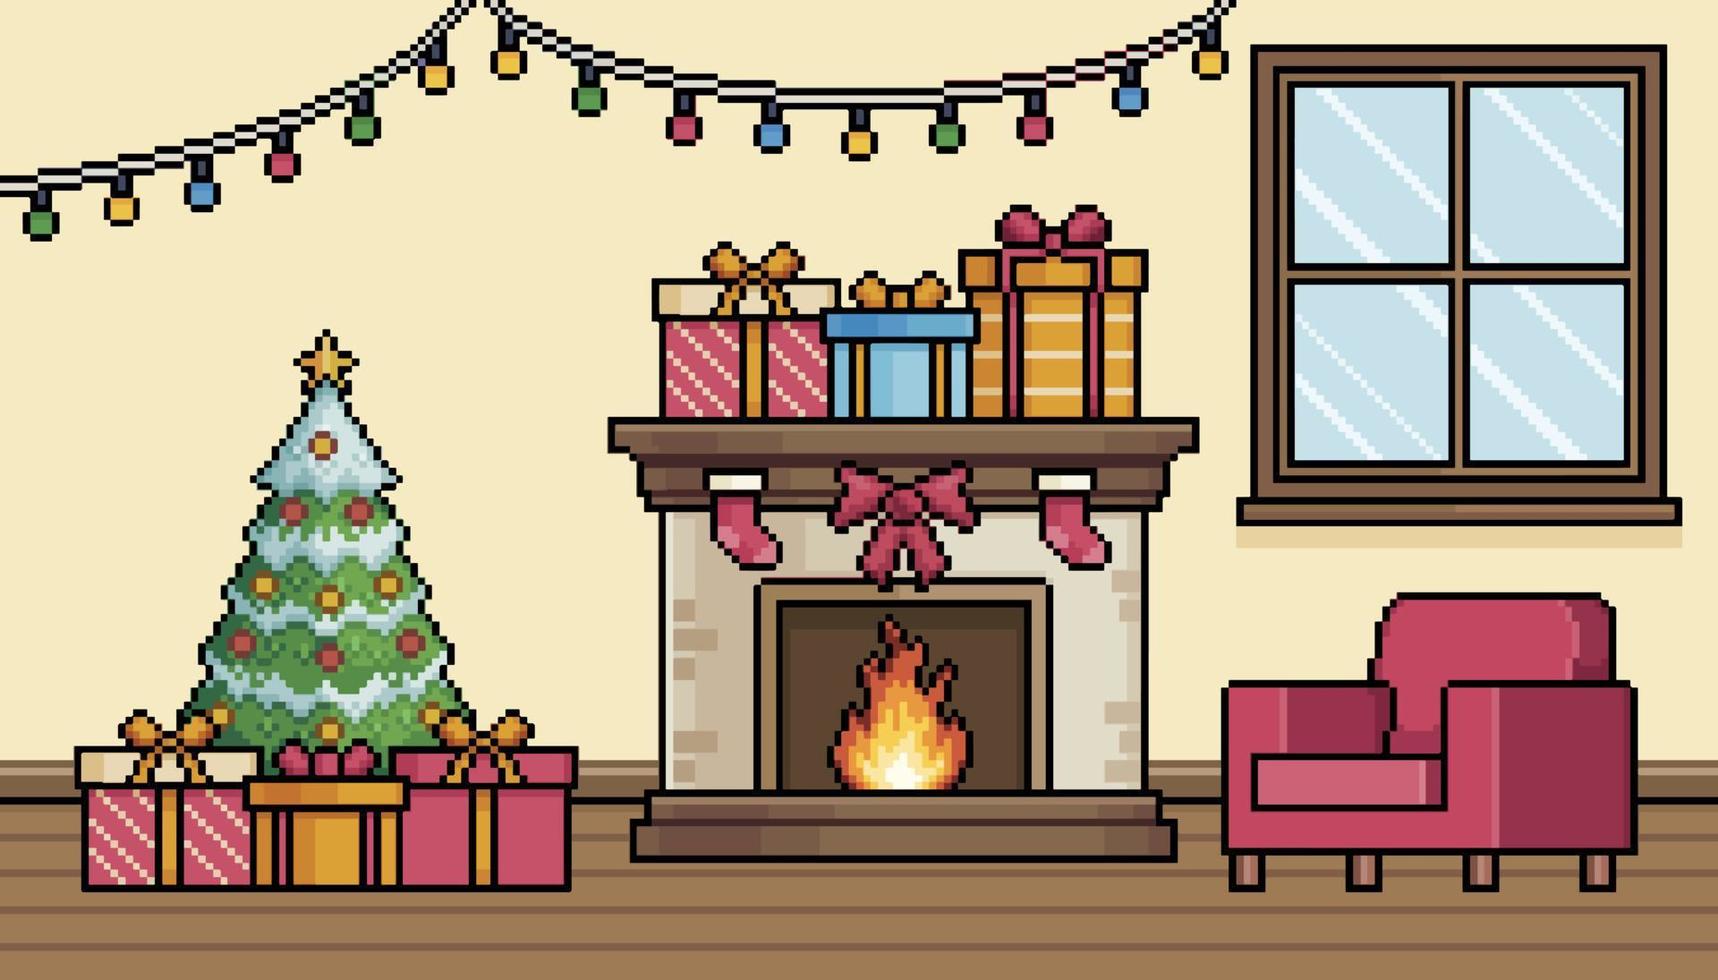 pixel konst levande rum med jul dekoration med öppen spis, jul träd och fåtölj bakgrund vektor för 8bit spel